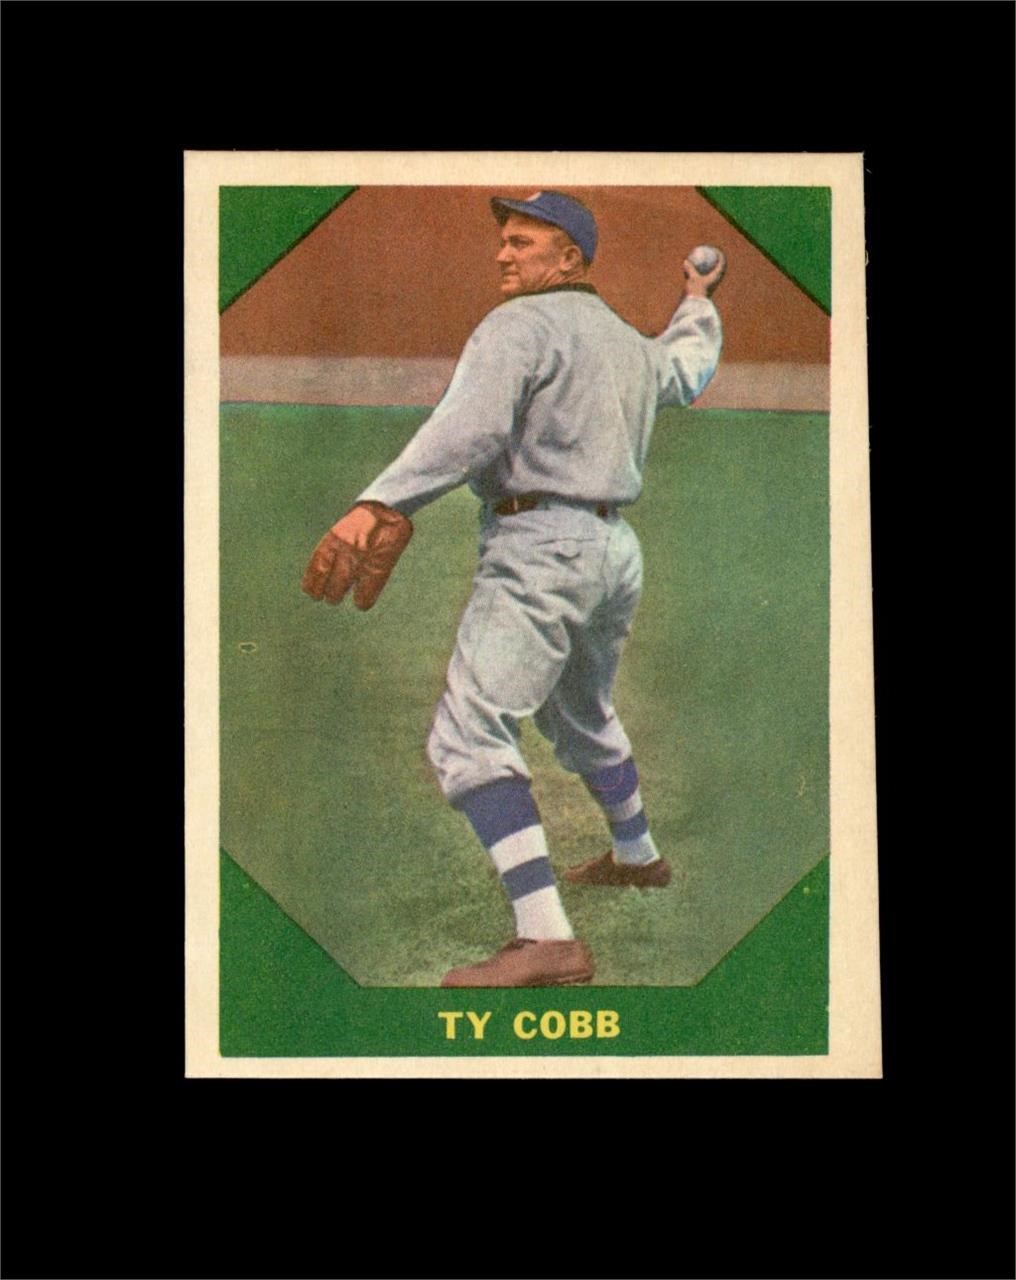 Vintage Sports Card Auction - Ends TUE 5/28 9PM CST